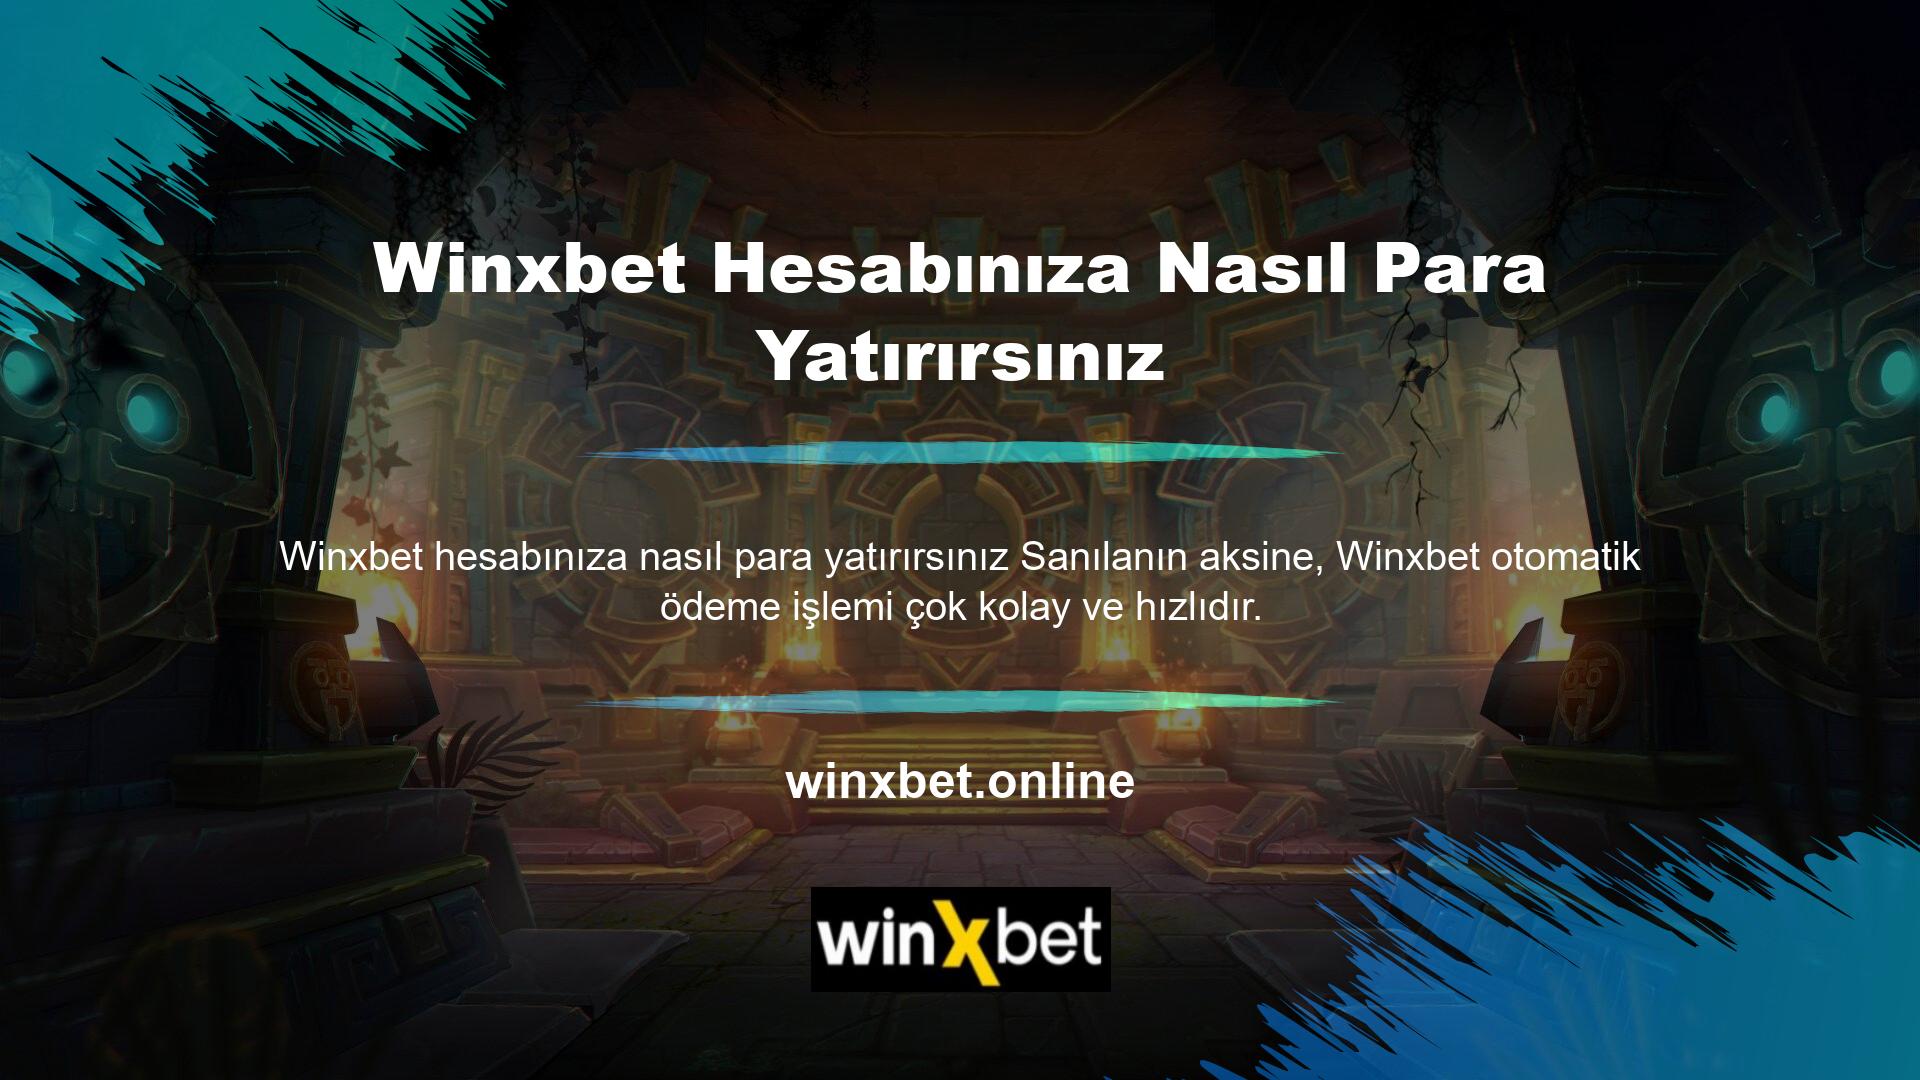 Winxbet çevrim içi olarak oynayabilmek için hesabı açan Winxbet çevrim içi bahis merkezinin belirli kısıtlamalara tabi olarak üye hesabına para yatırması gerekmektedir